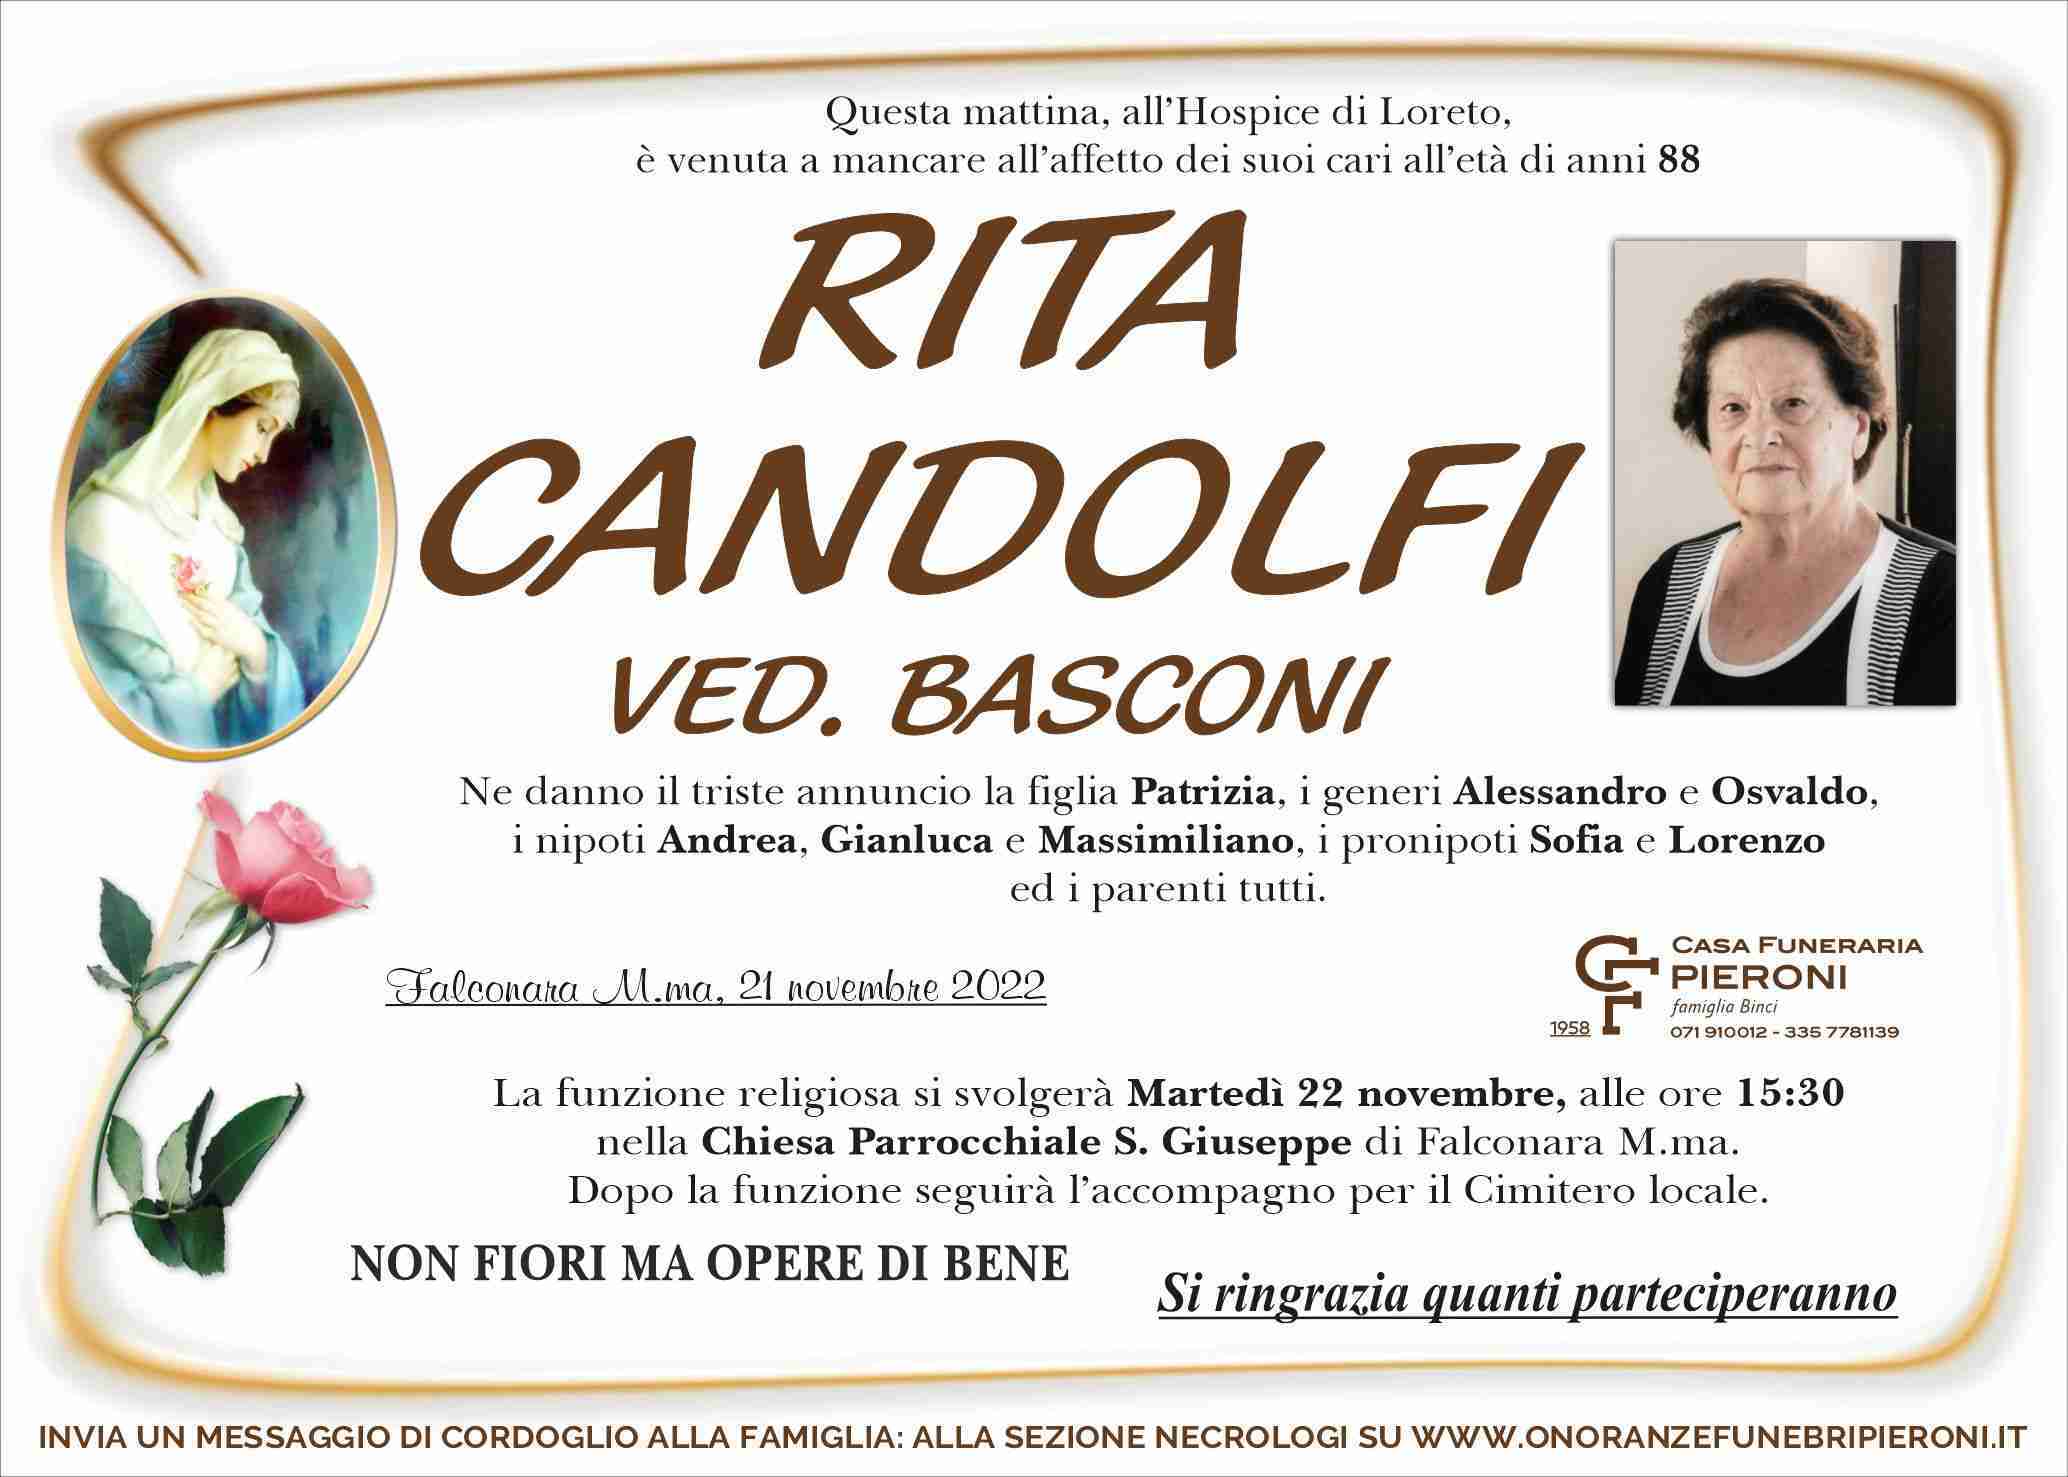 Rita Candolfi